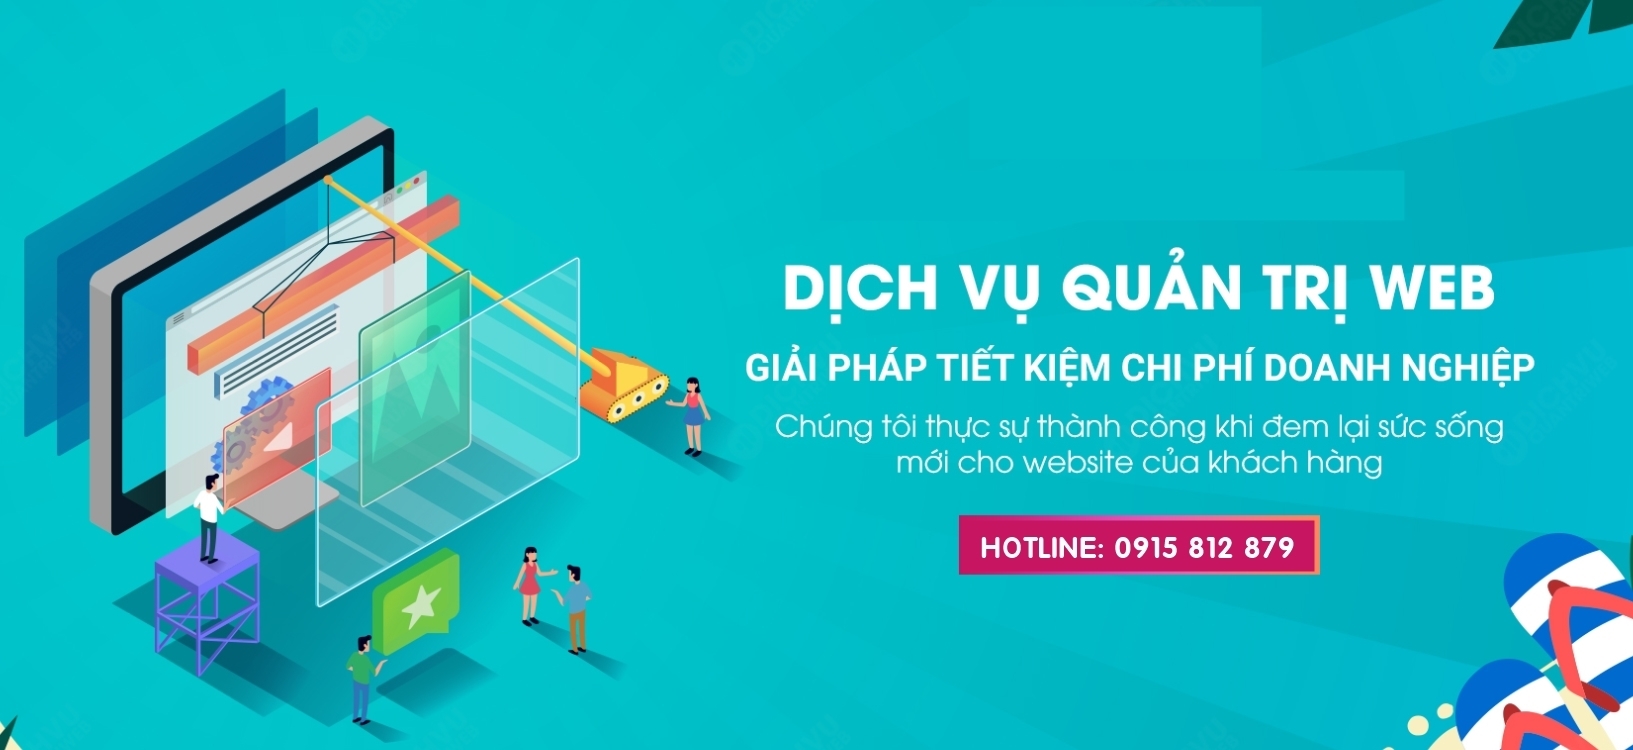 Hướng dẫn quản trị website uy tín chuyên nghiệp tại Phan Rang Ninh Thuận